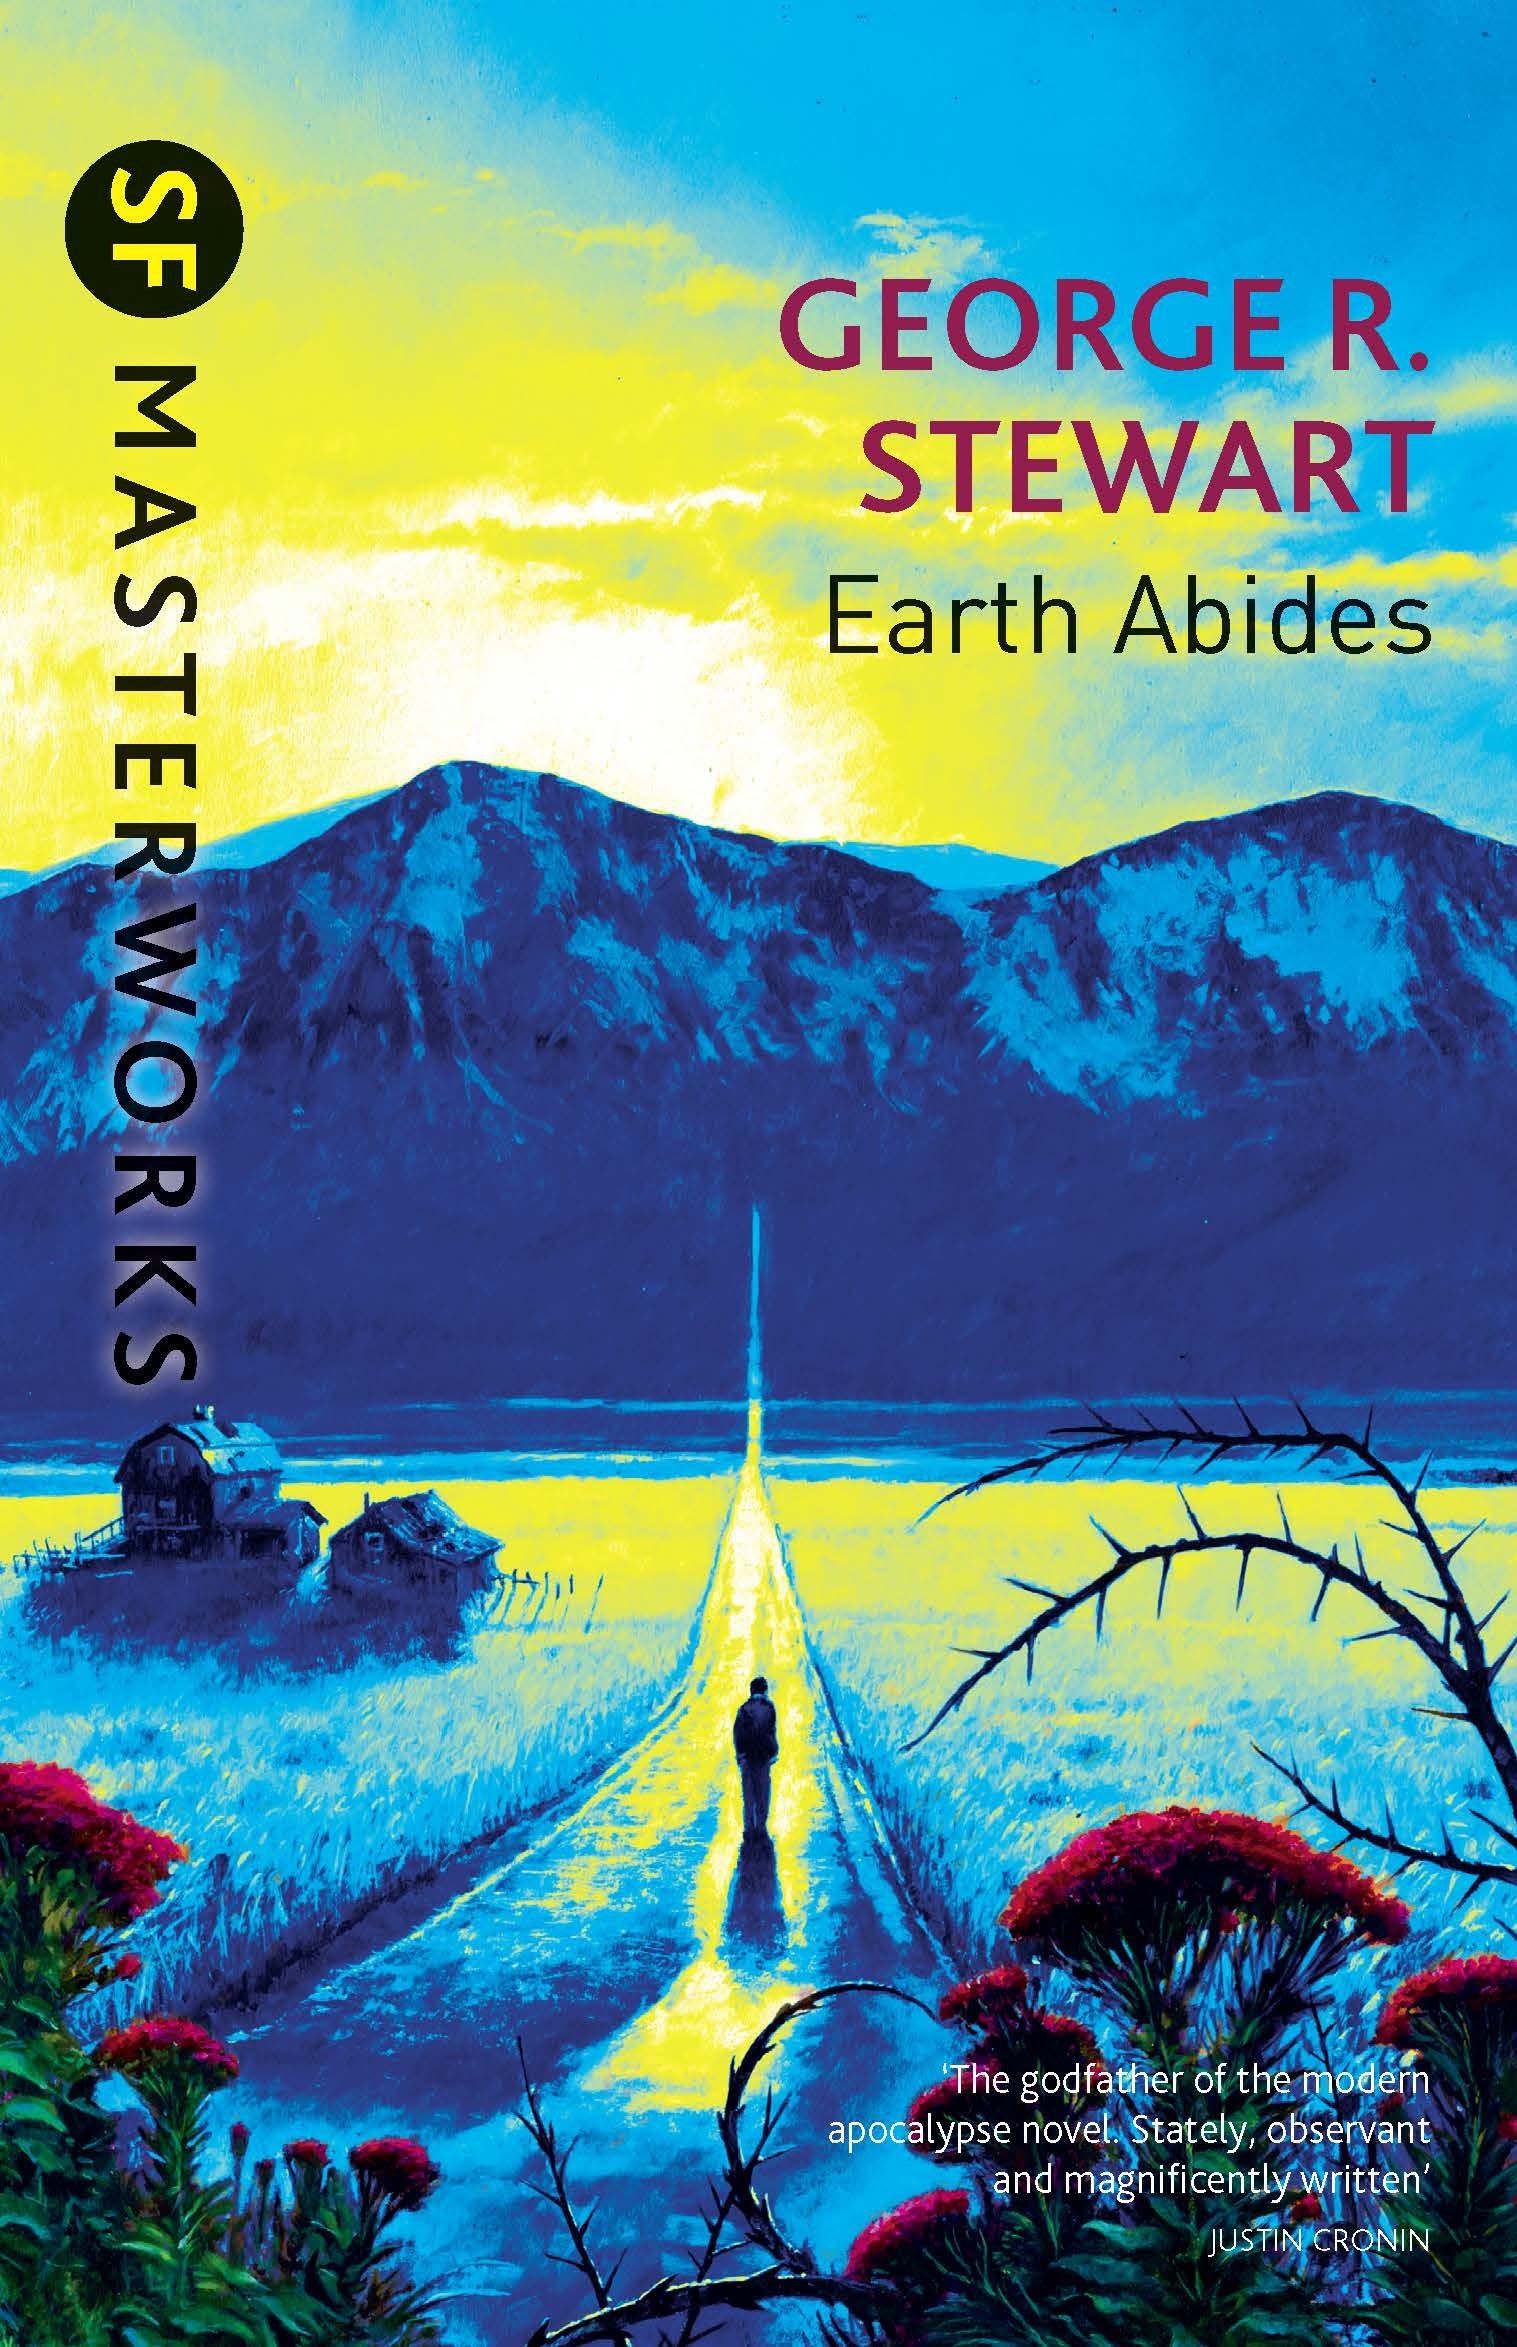 Earth Abides by George.R. Stewart